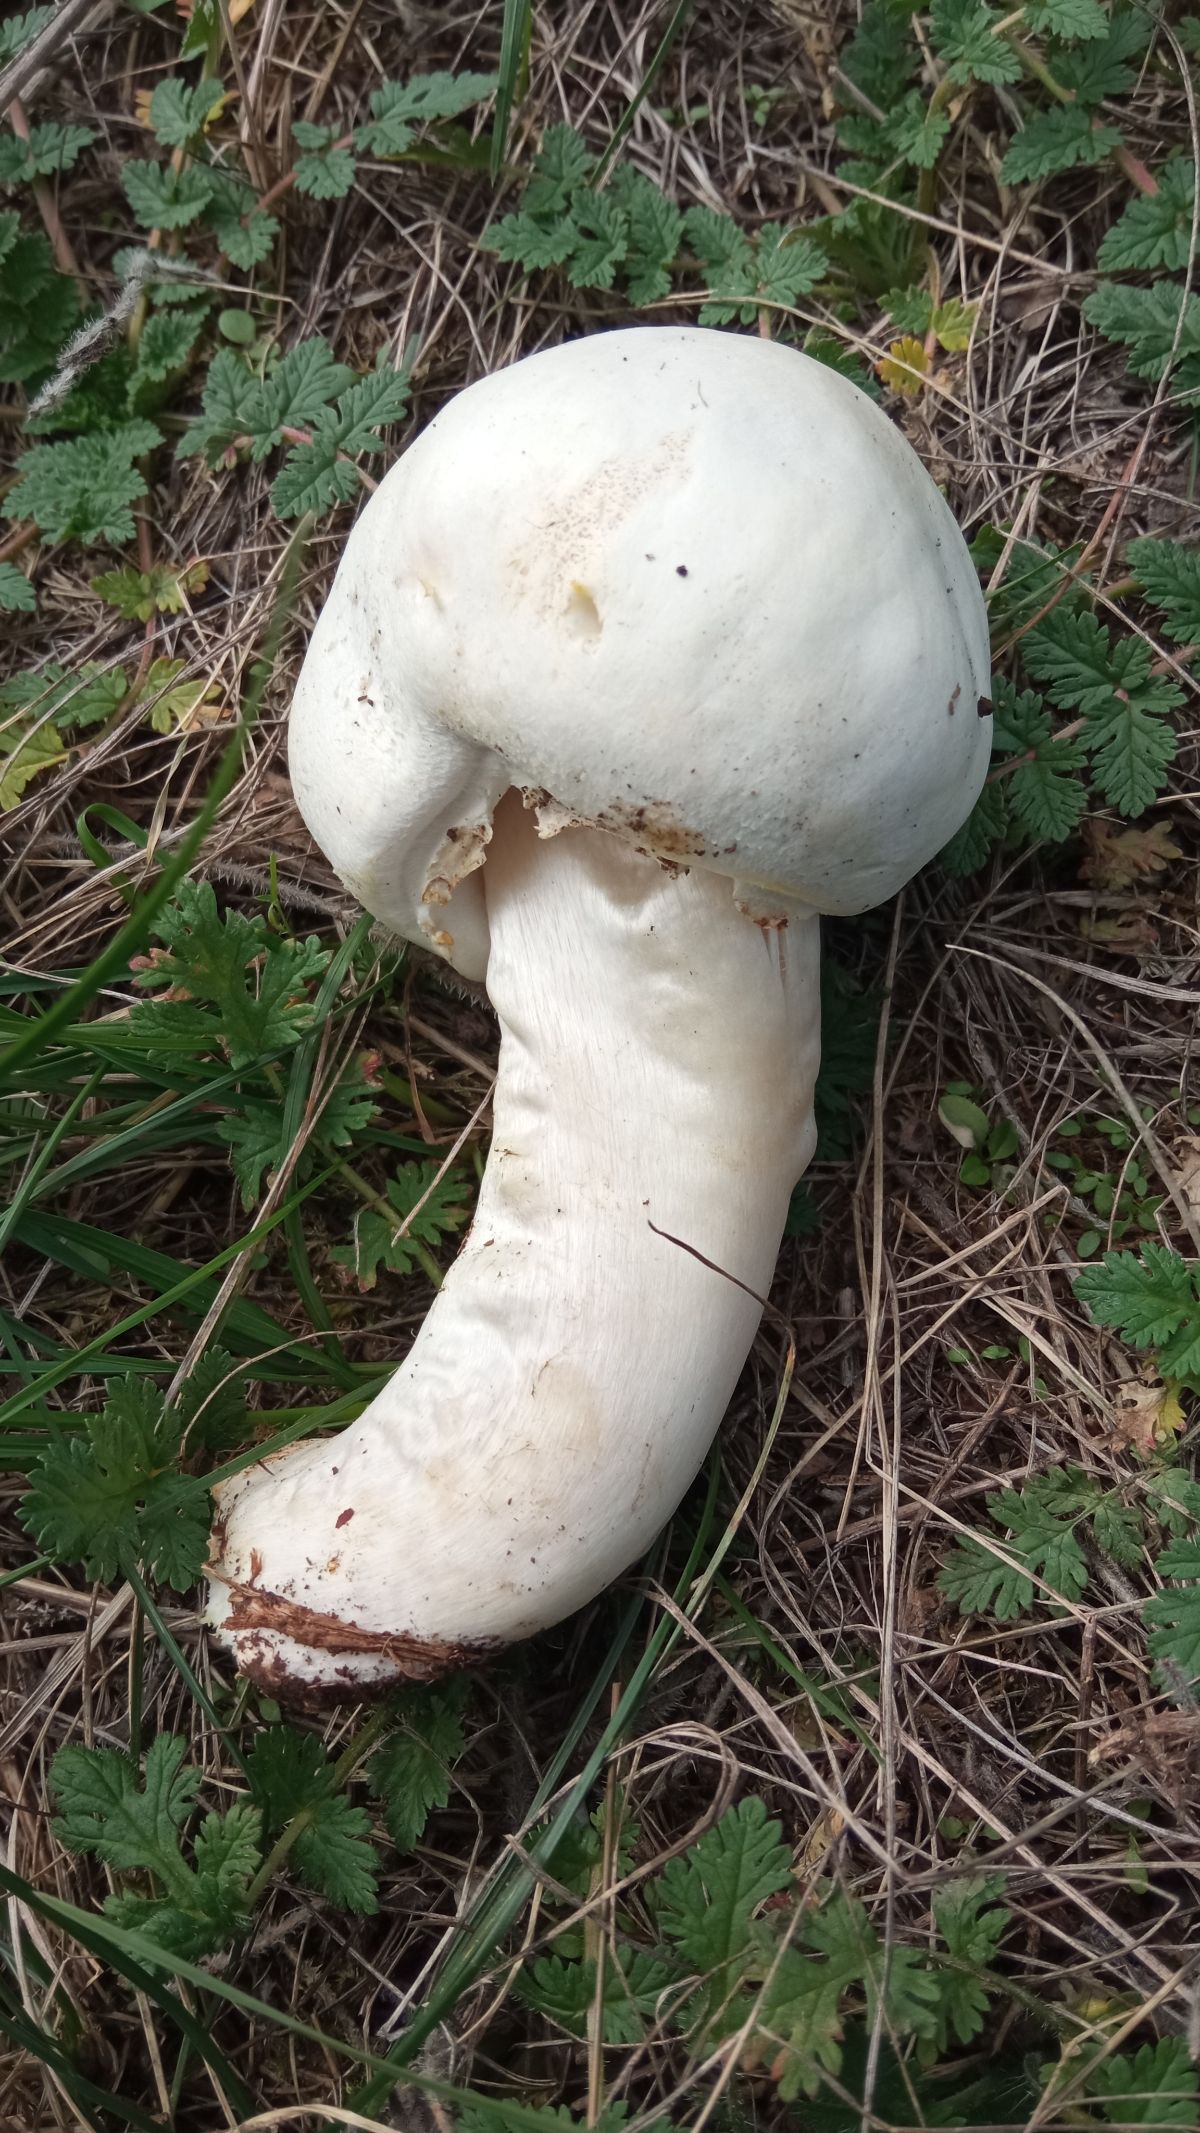 horse mushroom